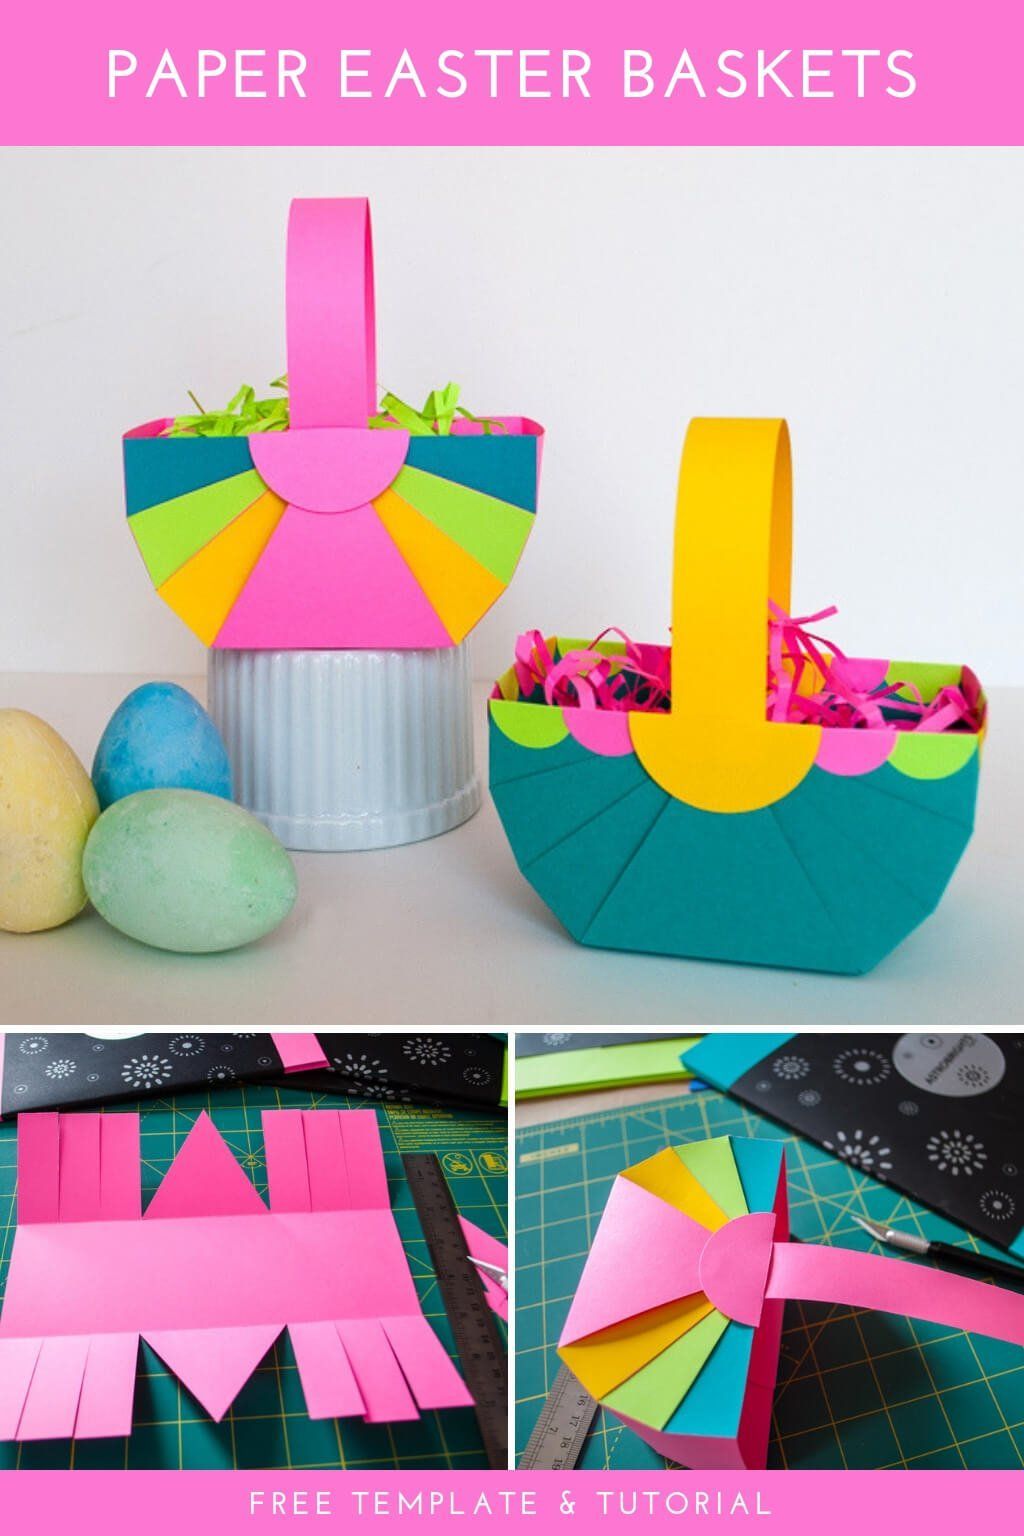 DIY Easter Basket Template (easy Easter crafts) - Merriment Design - DIY Easter Basket Template (easy Easter crafts) - Merriment Design -   18 diy Paper basket ideas